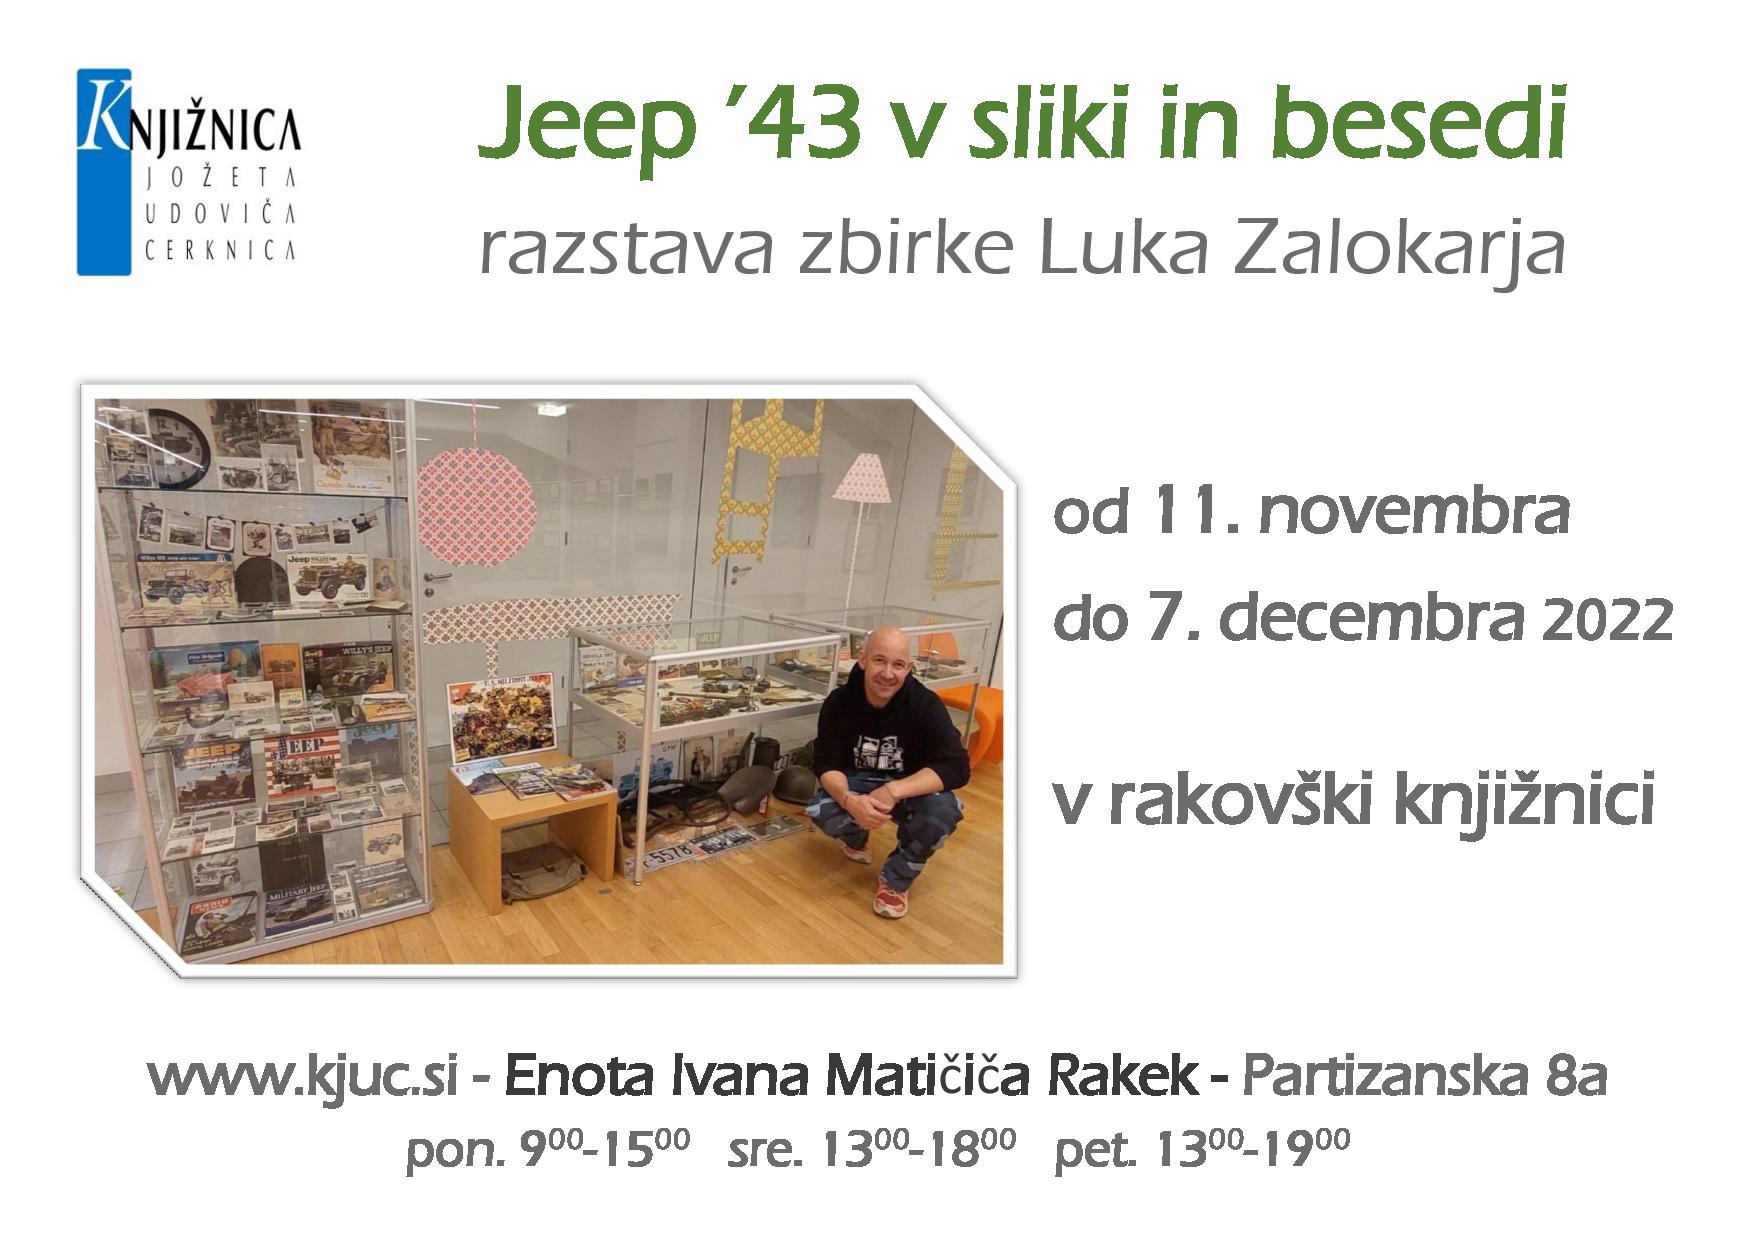 jeep 43 page 001 - Jeep '43 v sliki in besedi - razstava zbirke Luka Zalokarja